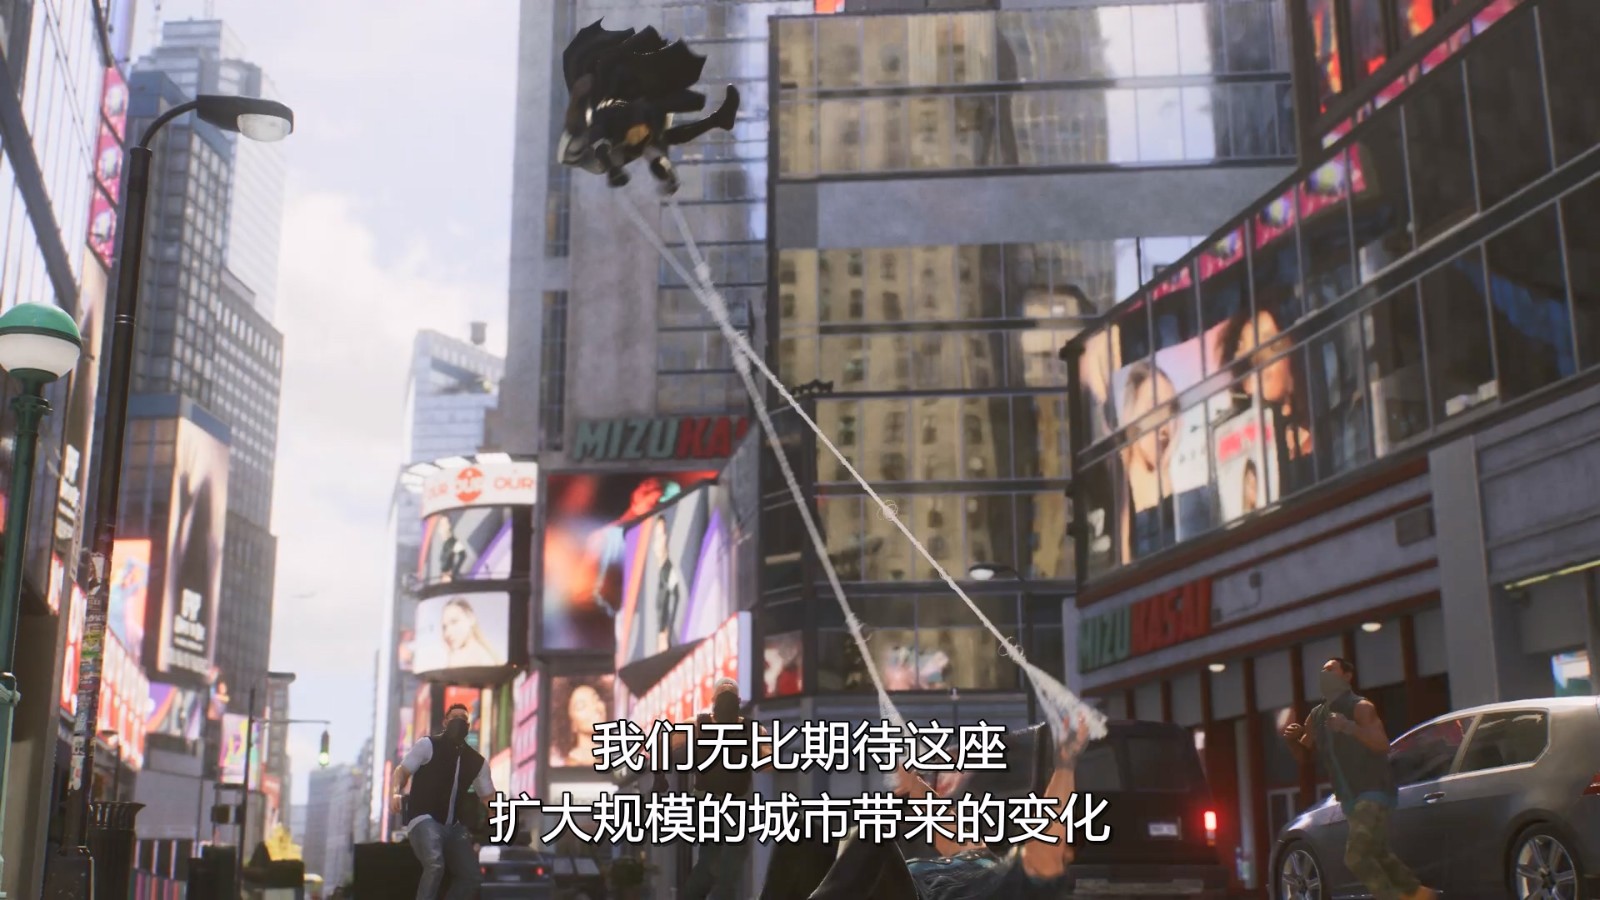 《漫威蜘蛛侠2》新预告片 经过拓展的漫威宇宙纽约市